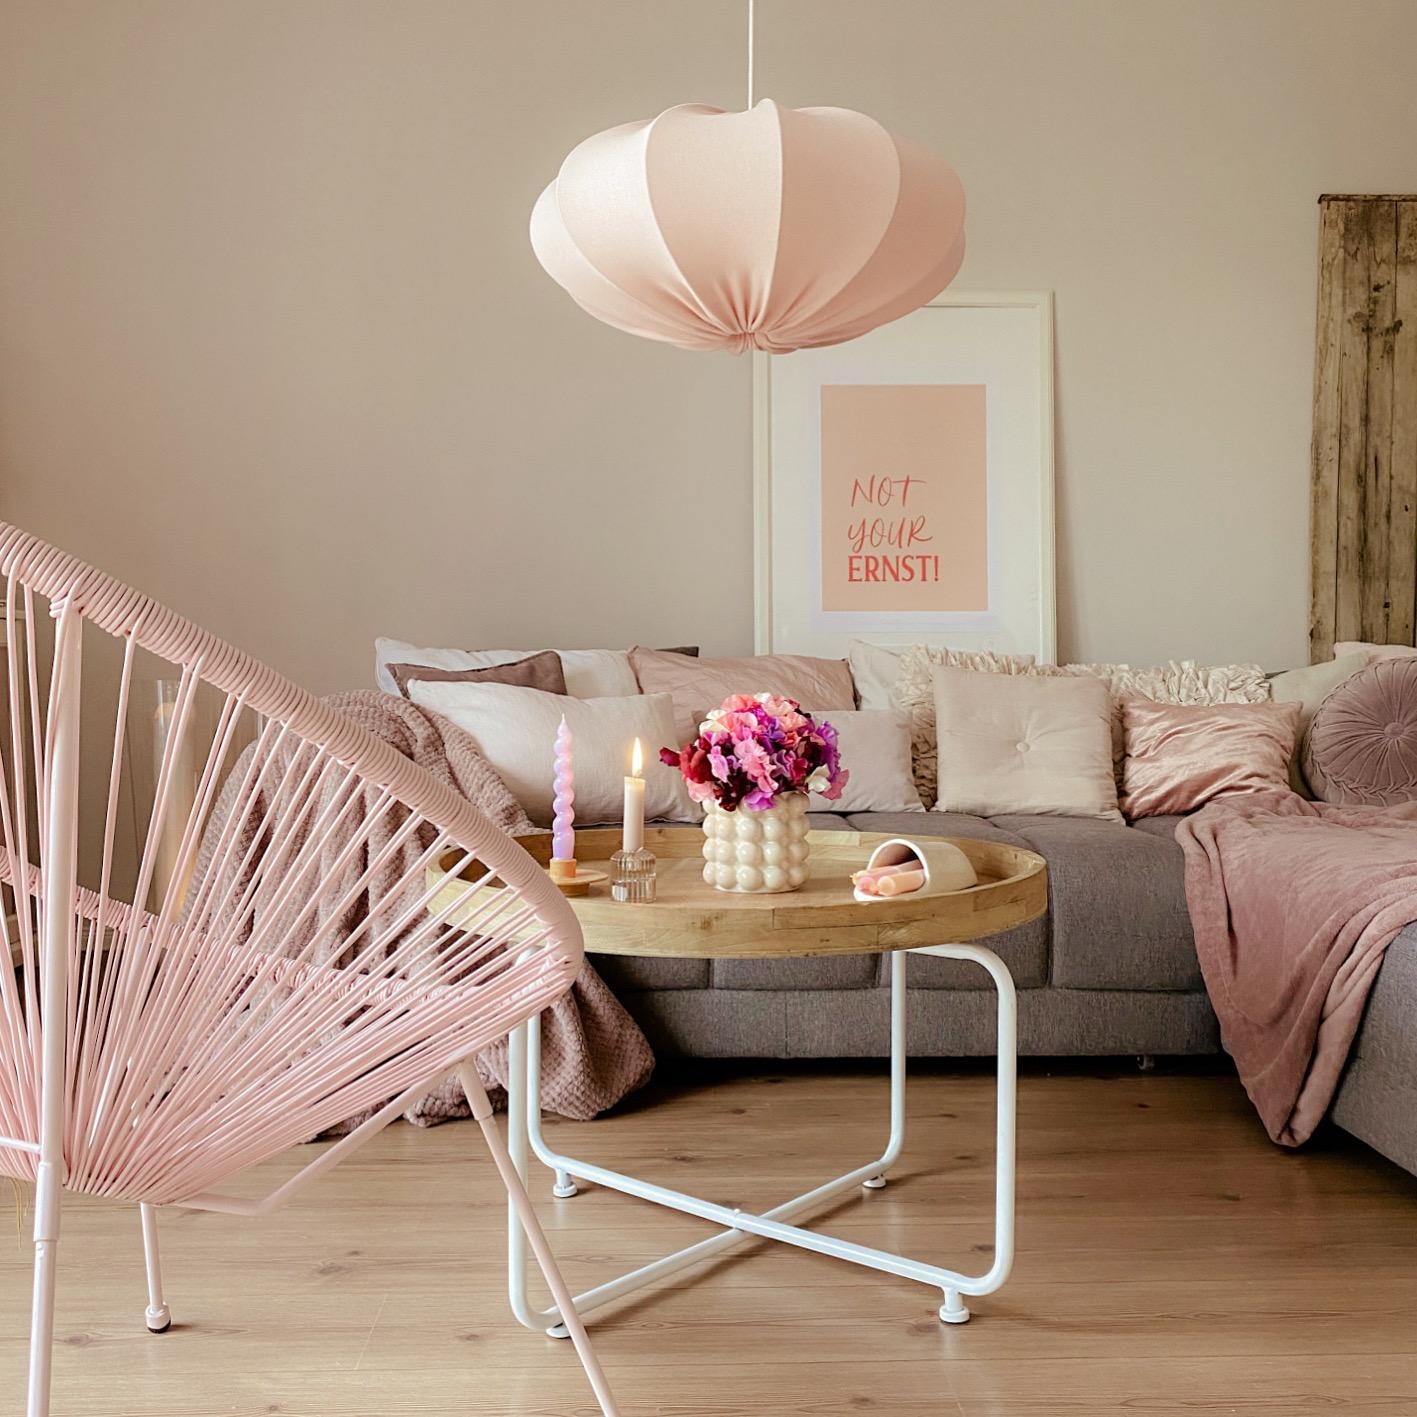 Wohnzimmerideen
#rosaliebe#hyggehome#couchstyle#cozylivingroom#wohnzimmerinspiration